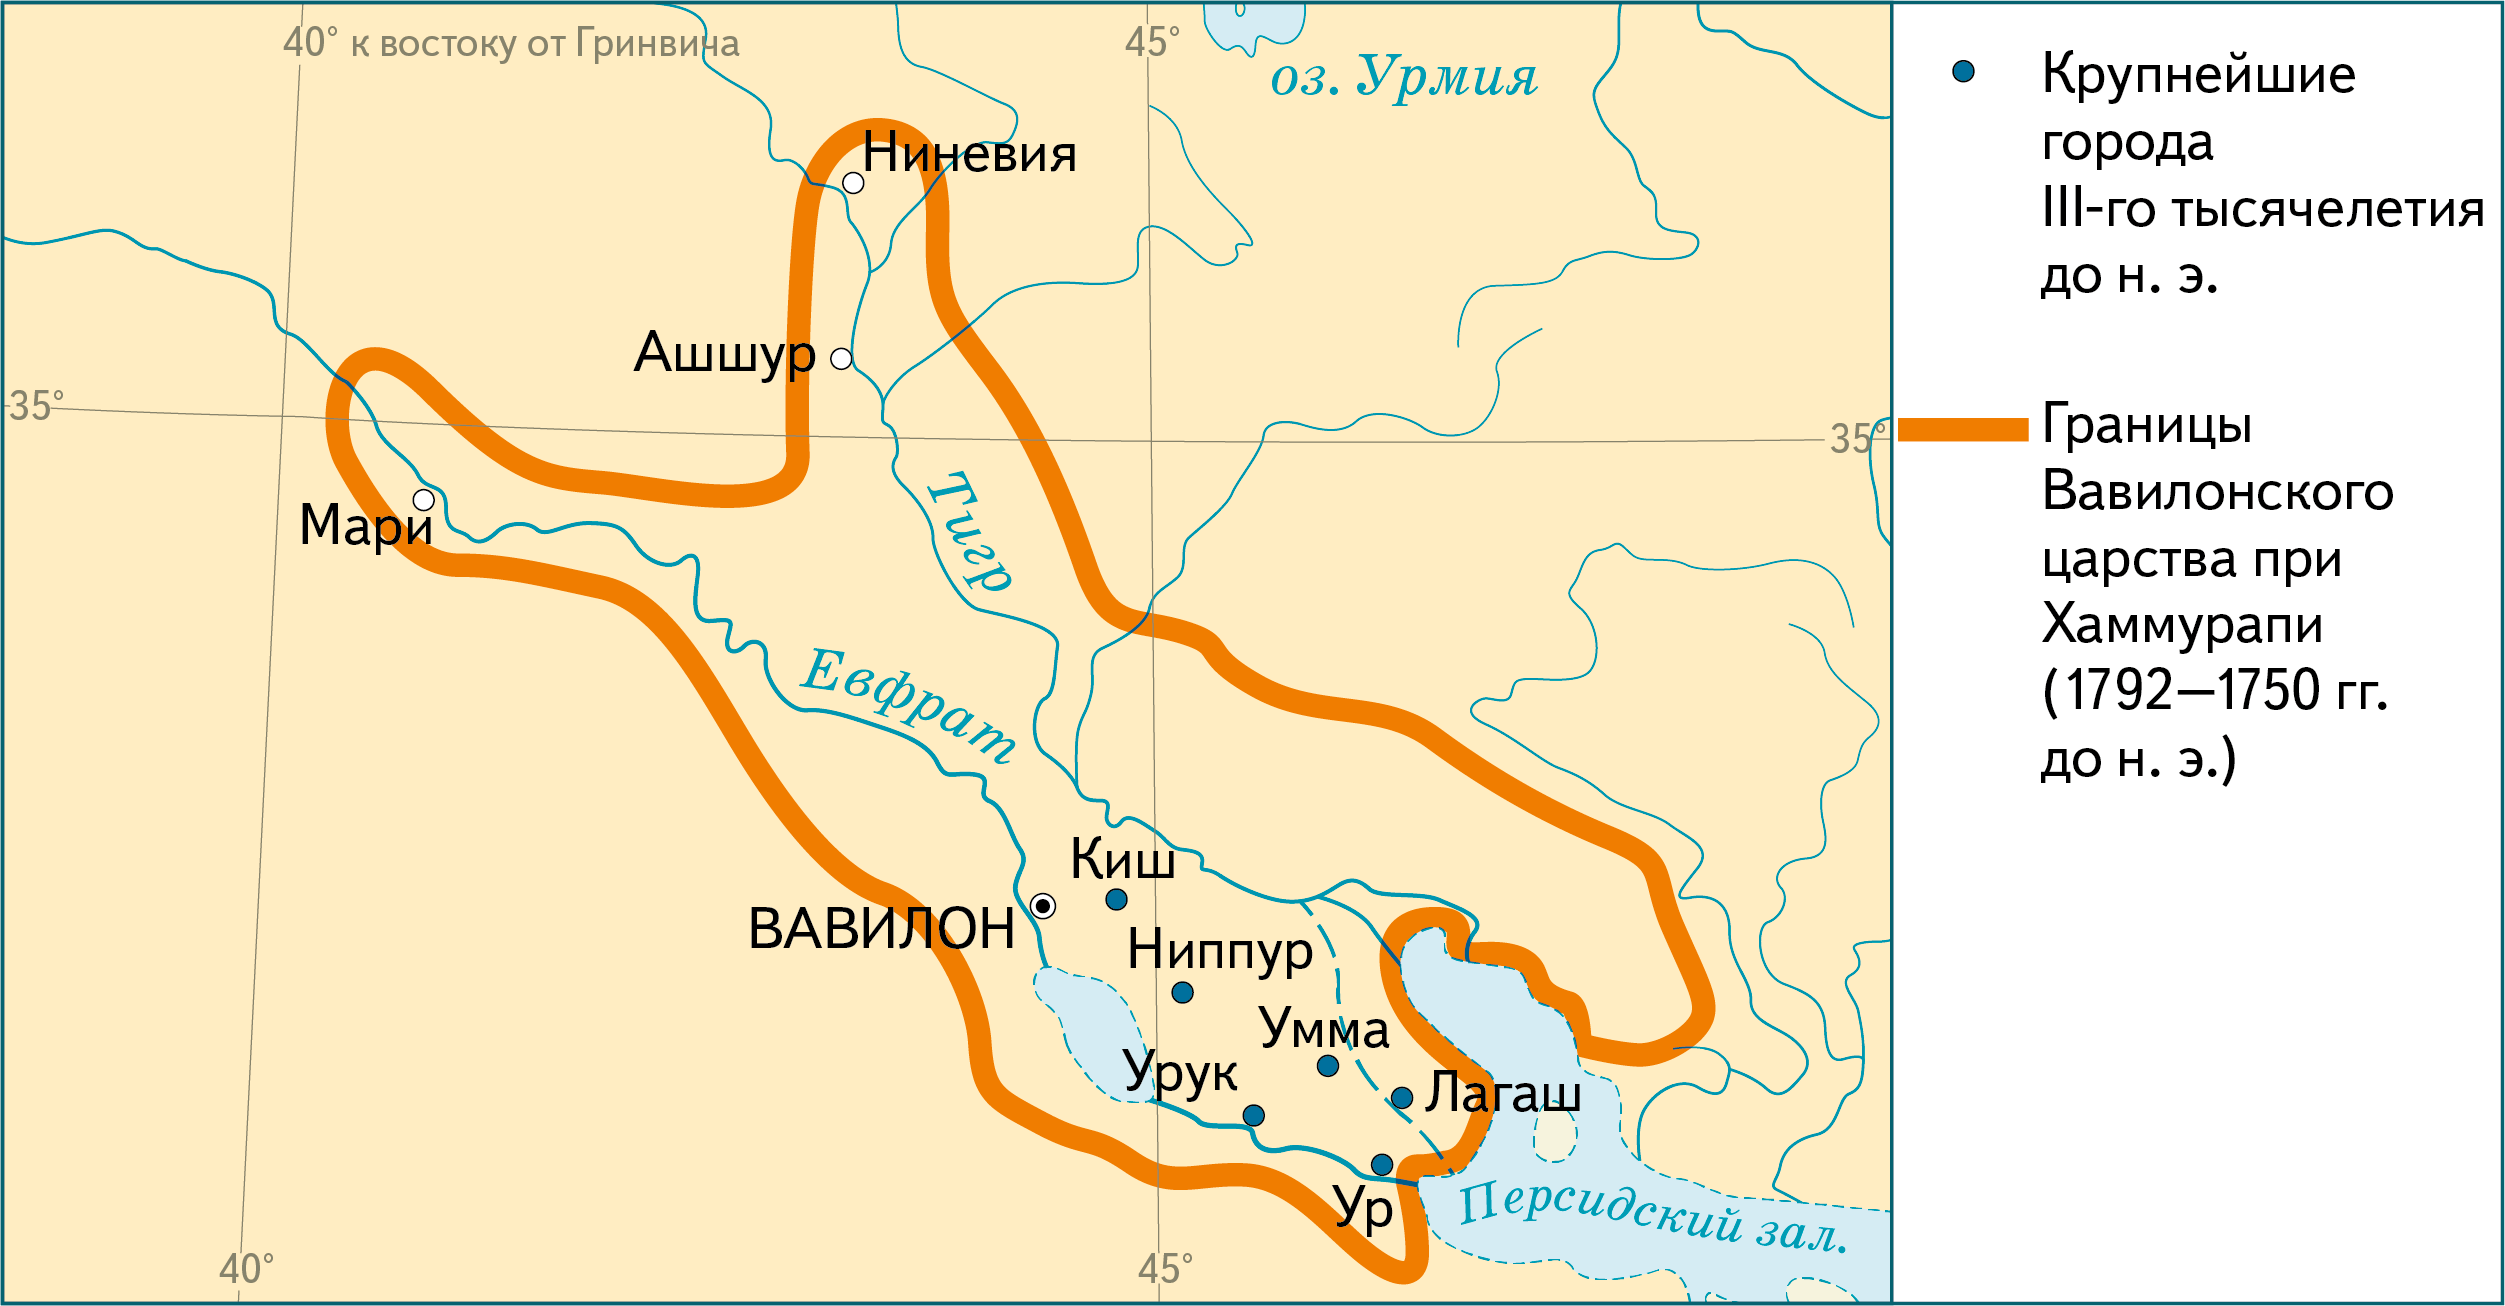 Вавилон Хаммурапи карта